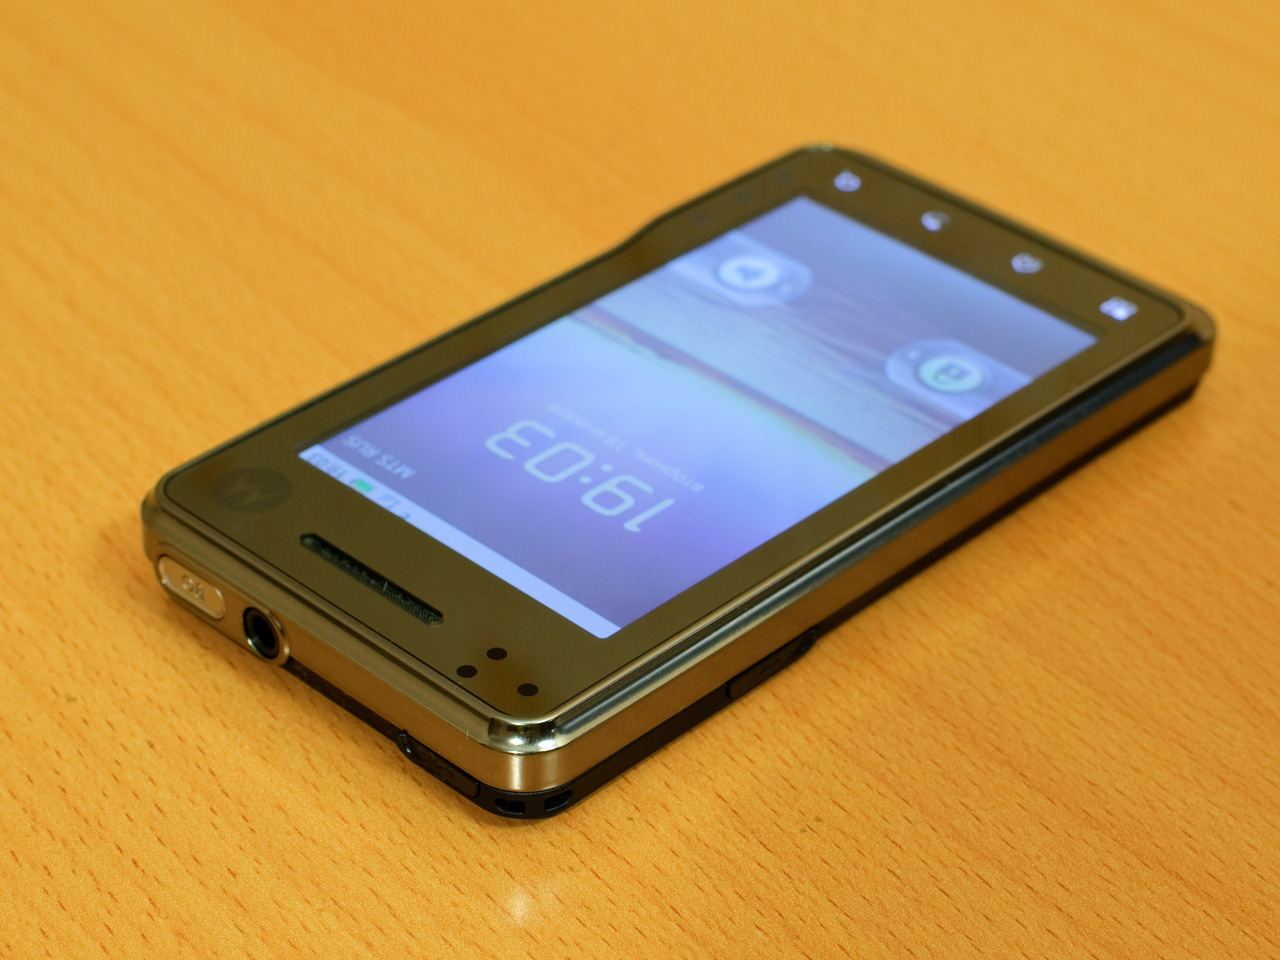 Обзор телефона Motorola Milestone xt720